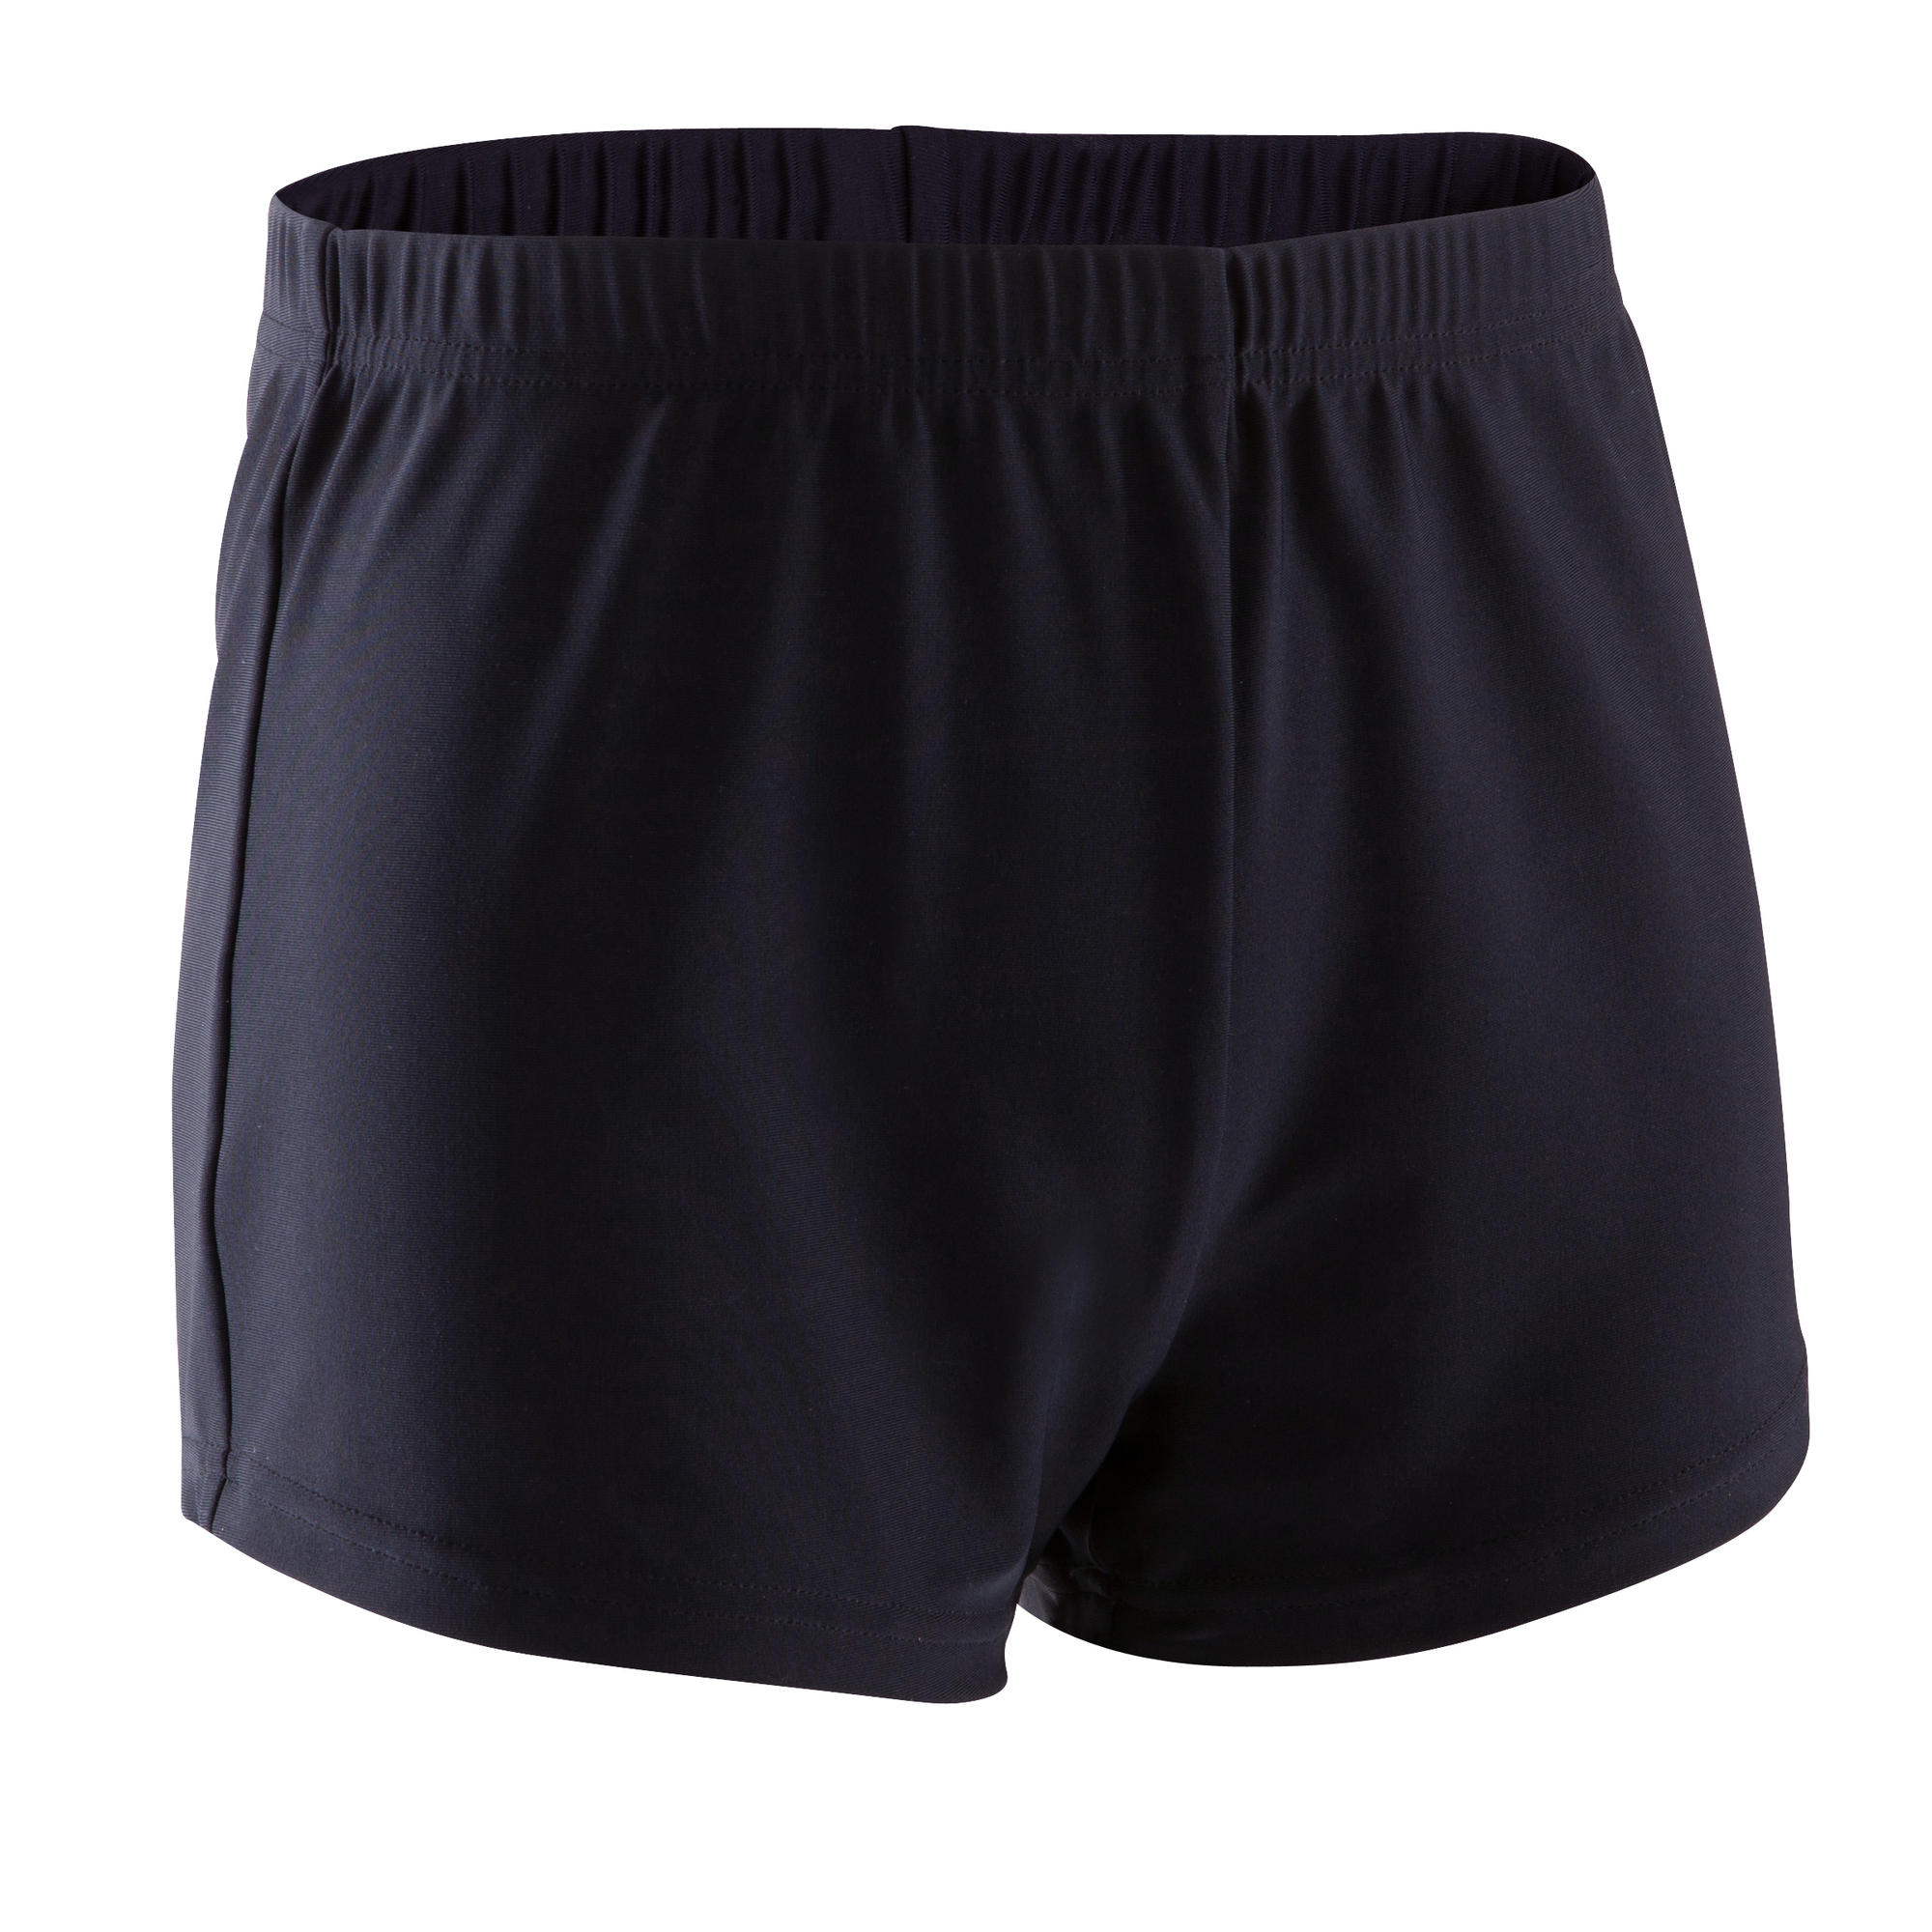 Boys' Artistic Gym Shorts (MAG) - Black | Domyos by Decathlon